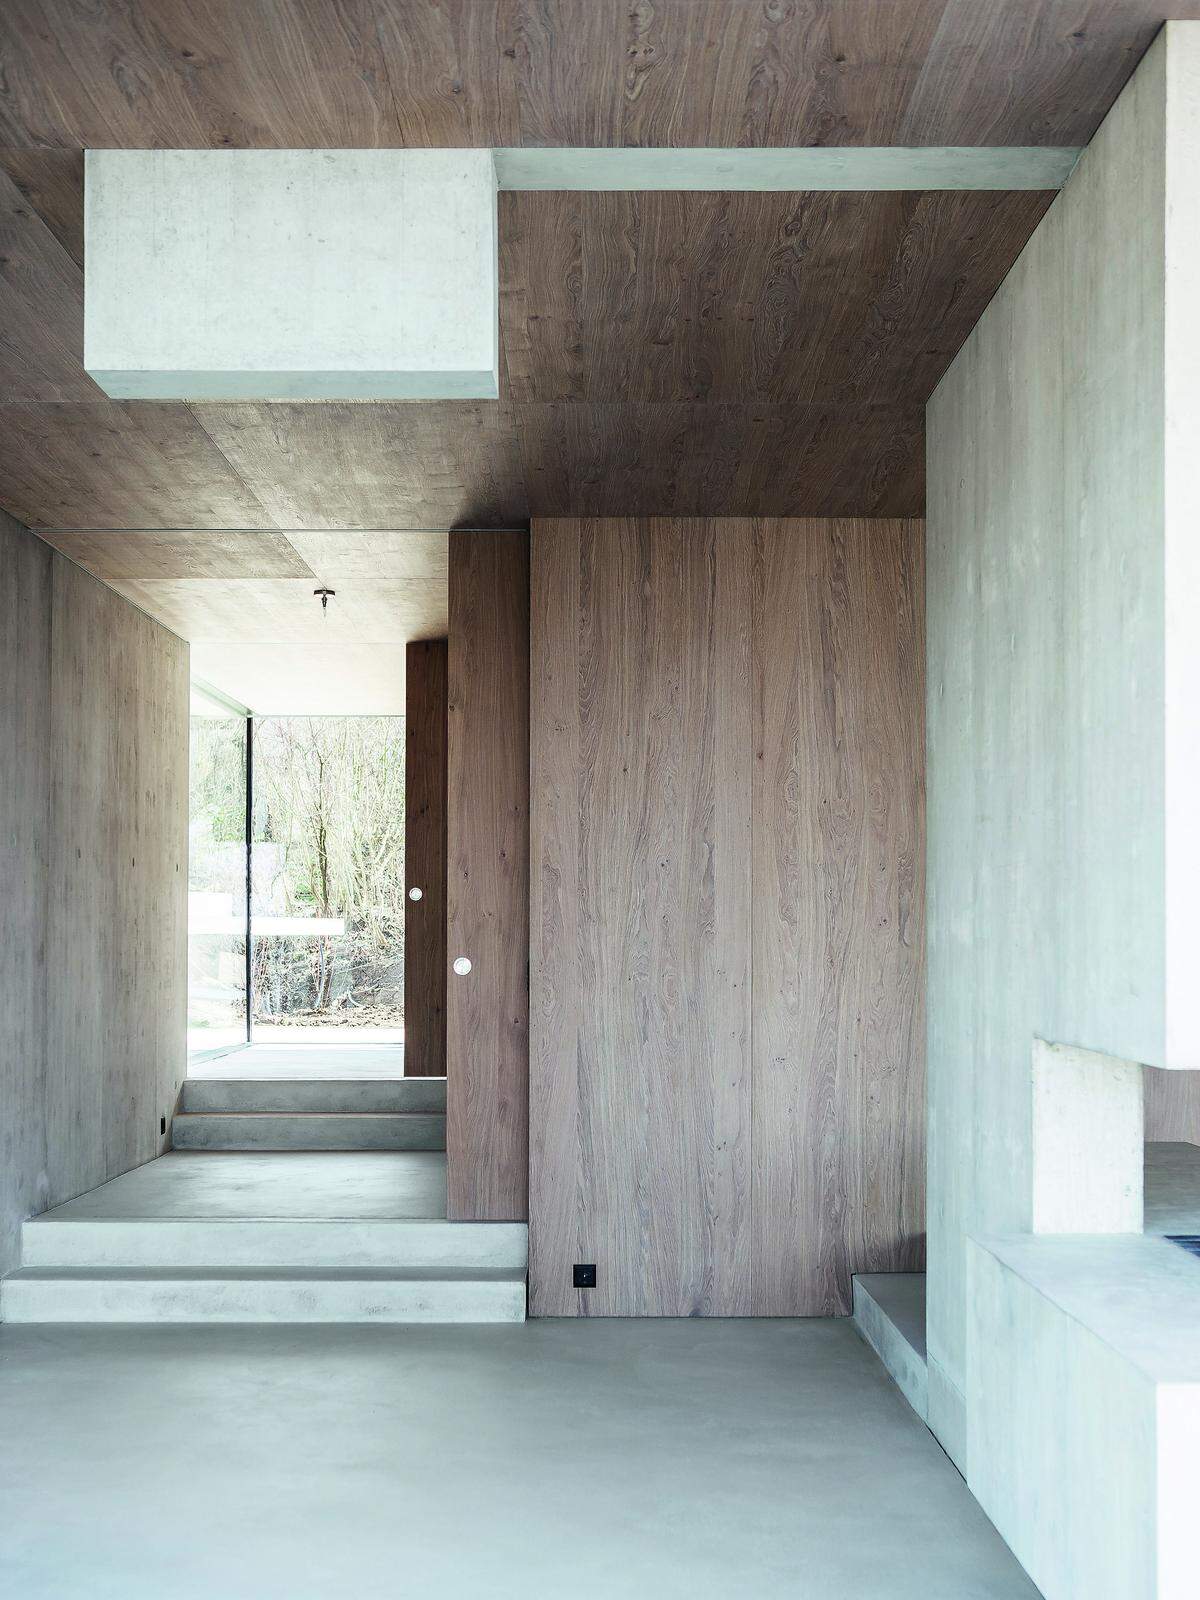 Reuter Raeber Architekten, Basel (Schweiz), für das Objekt "Gebauter Dualismus" in Riehen